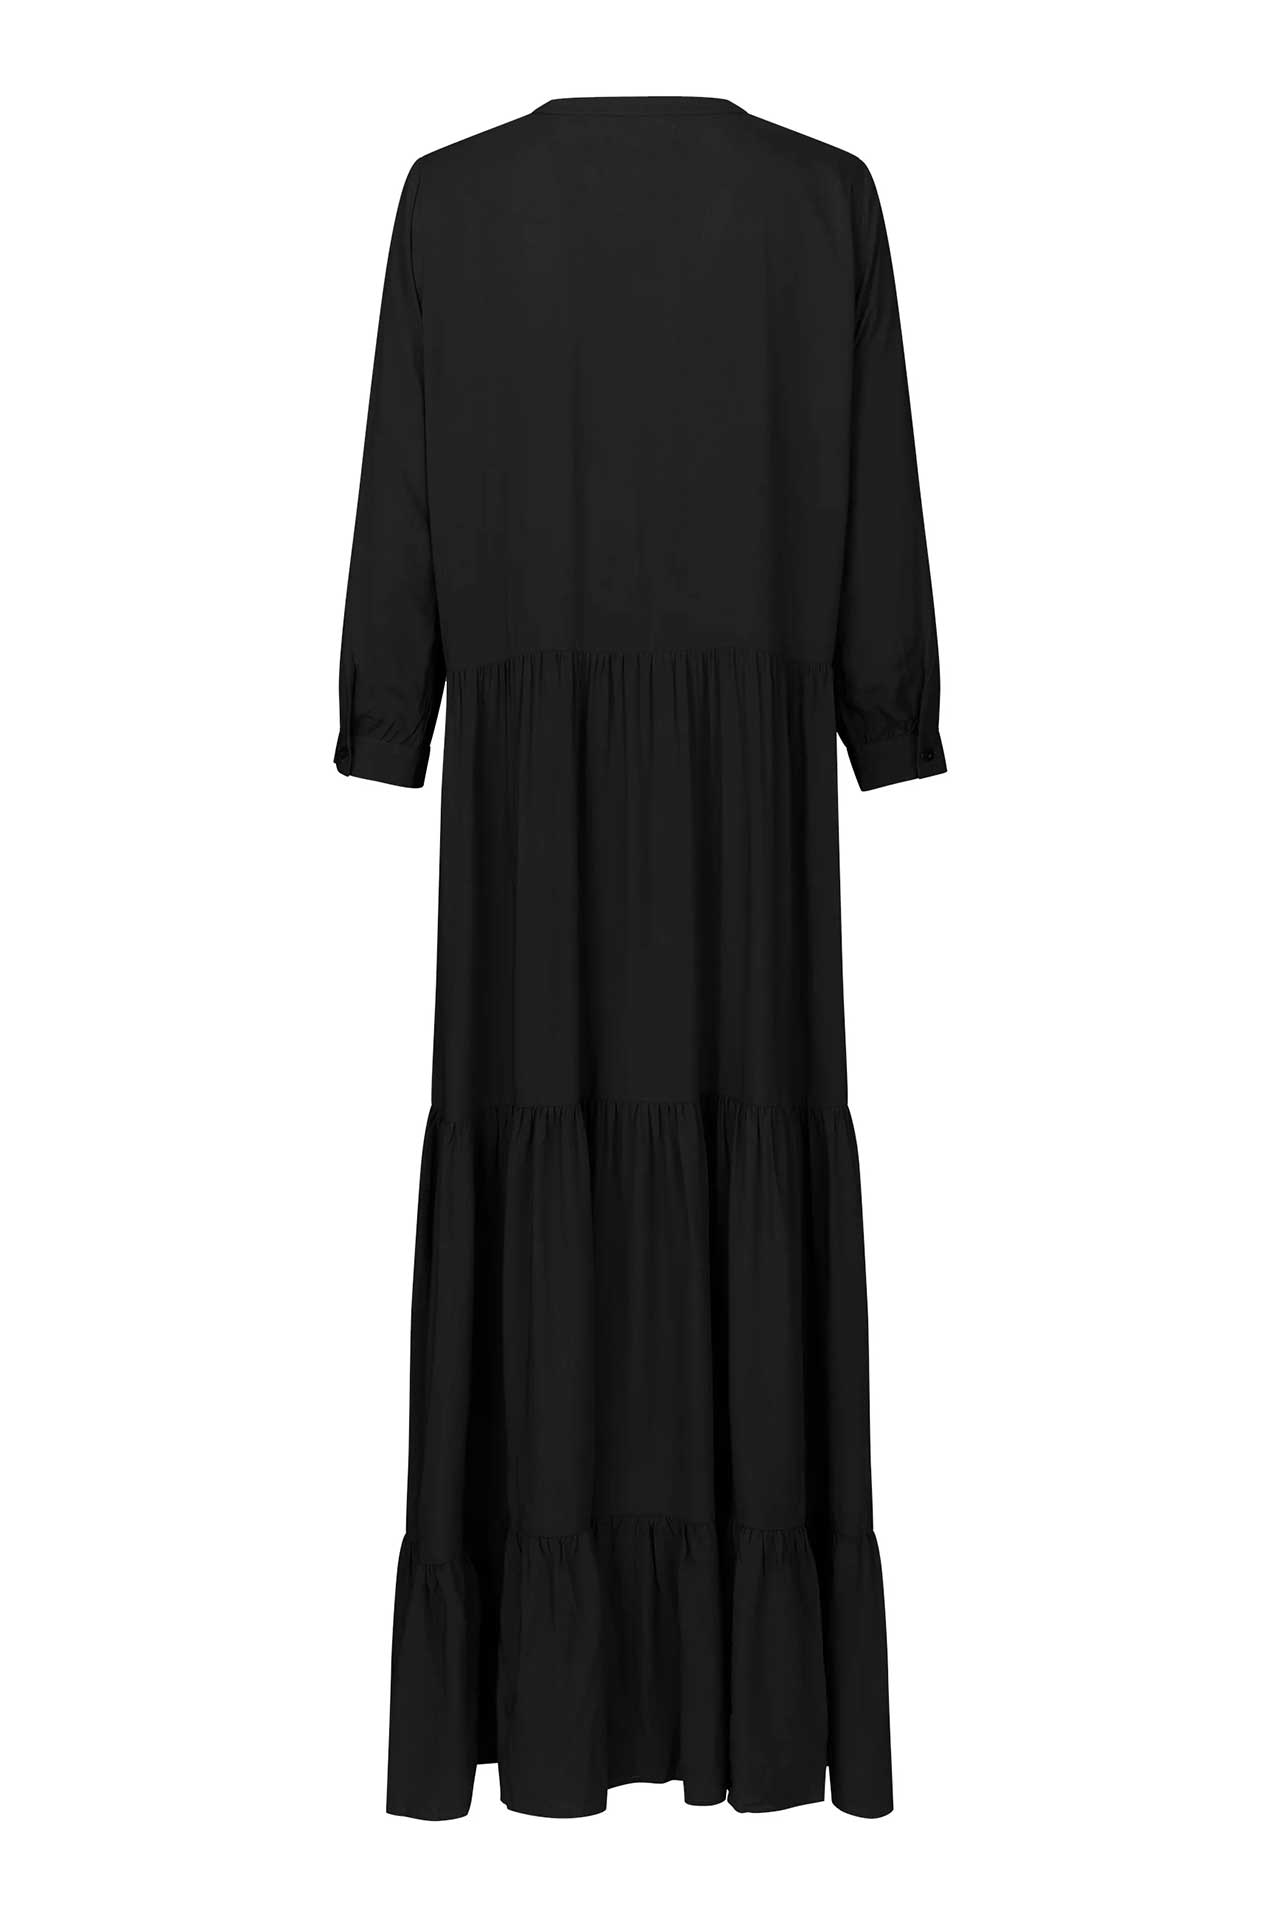 Lollys Laundry NeeLL Maxi Dress LS Dress 99 Black